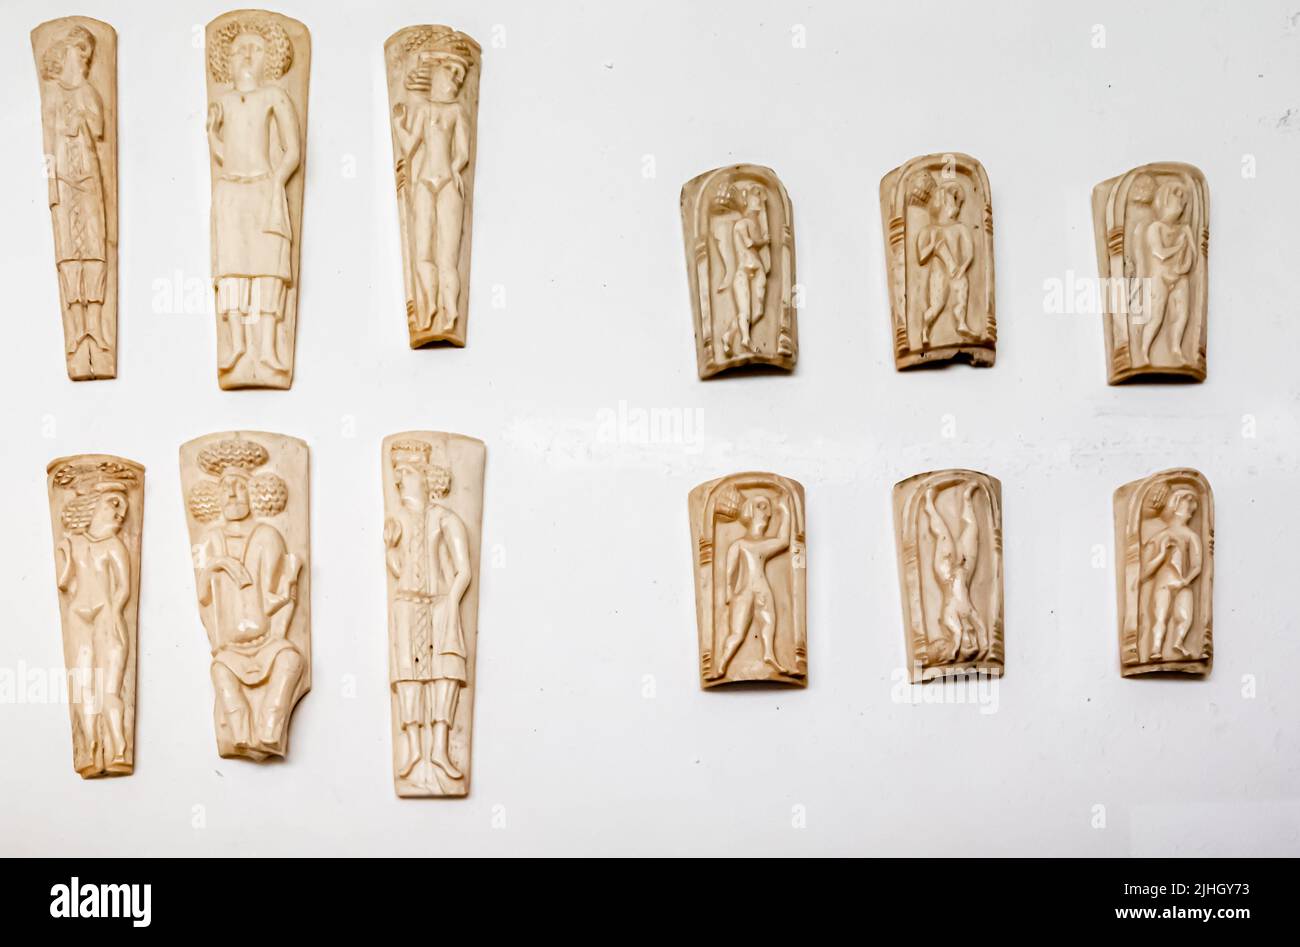 Elfenbeintafeln aus einem Reim mit iranischen Adligen und Akrobaten. Olbia. 2. Jahrhundert n. Chr. Stockfoto